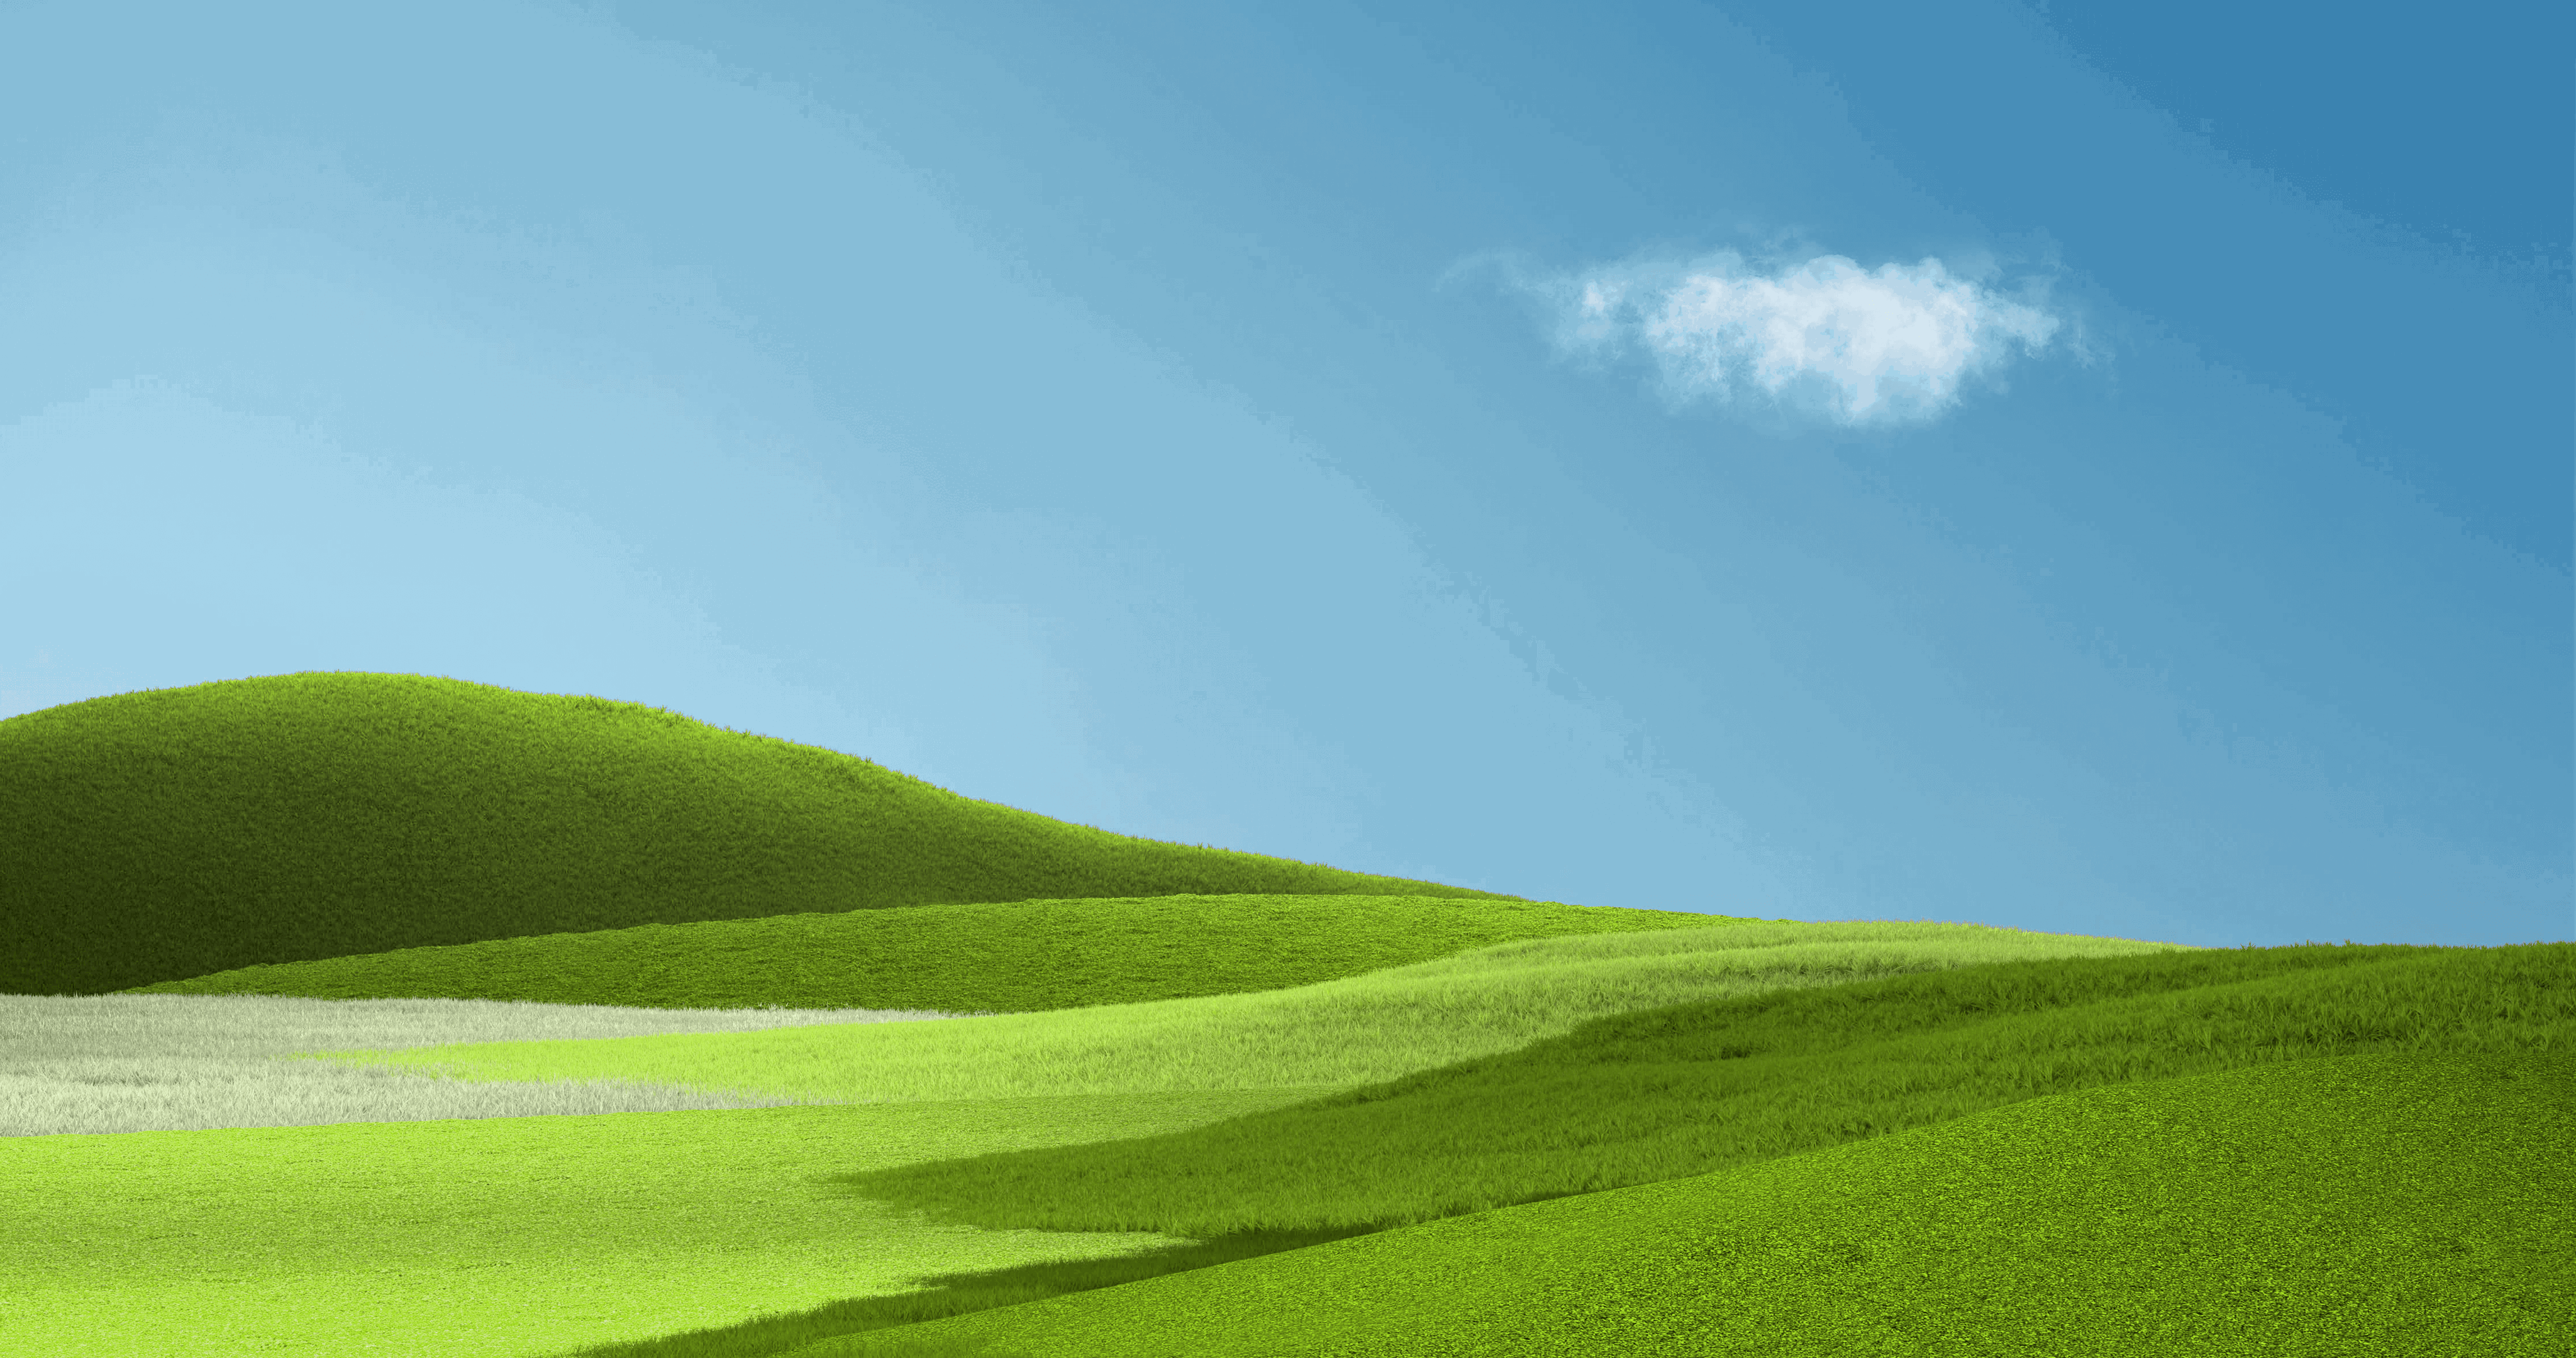 Microsoft Grass Natural Light 4096x2160